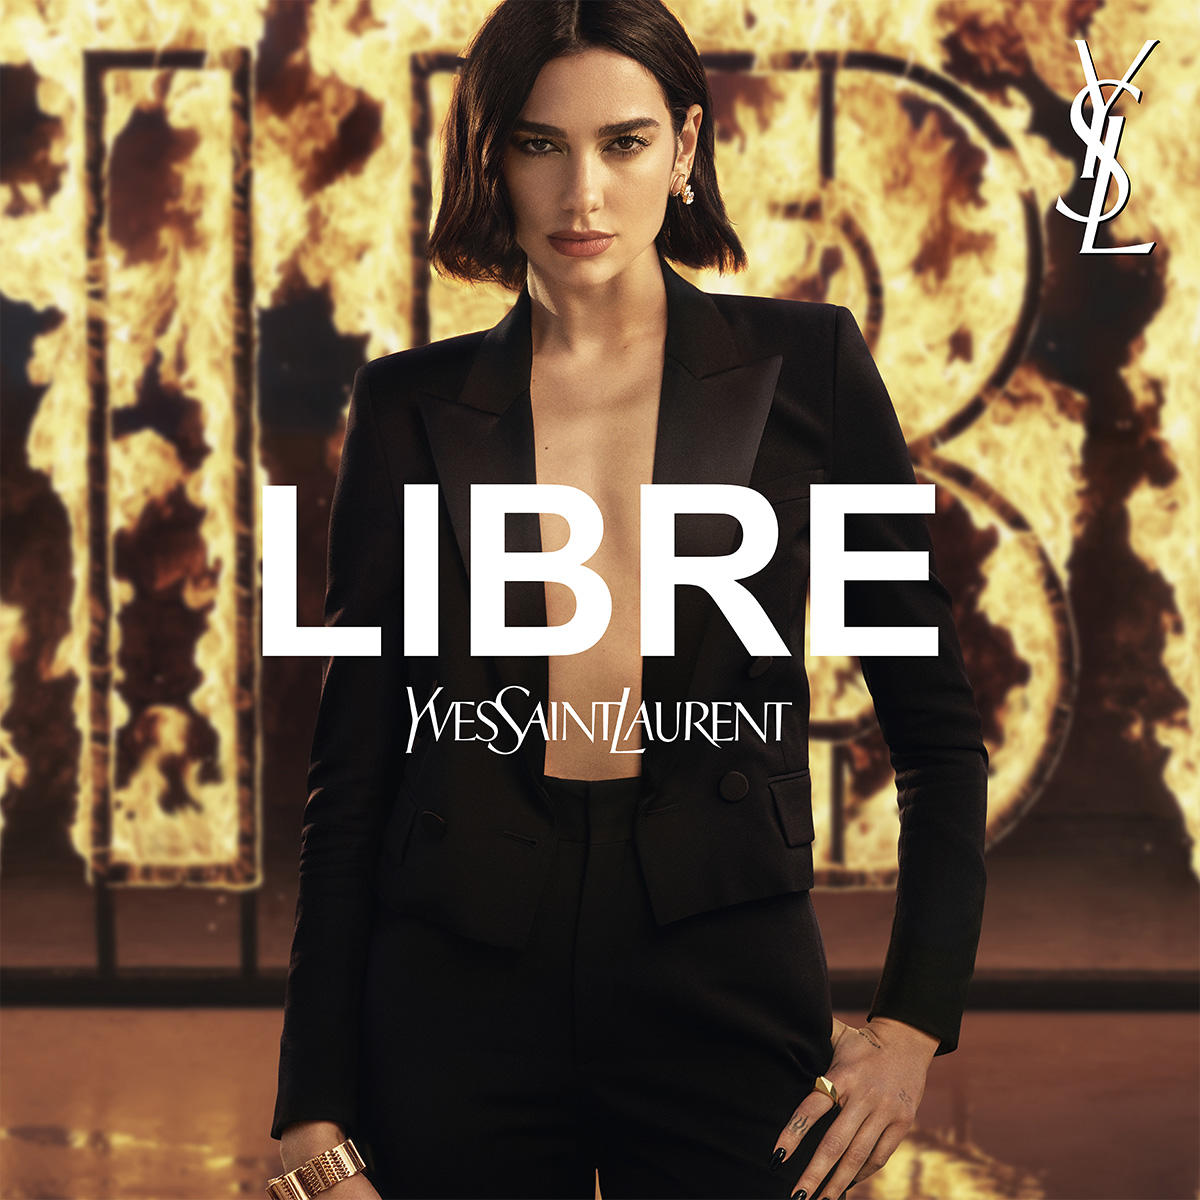 Yves Saint Laurent Libre Eau de Parfum Refill 100 ml - 6